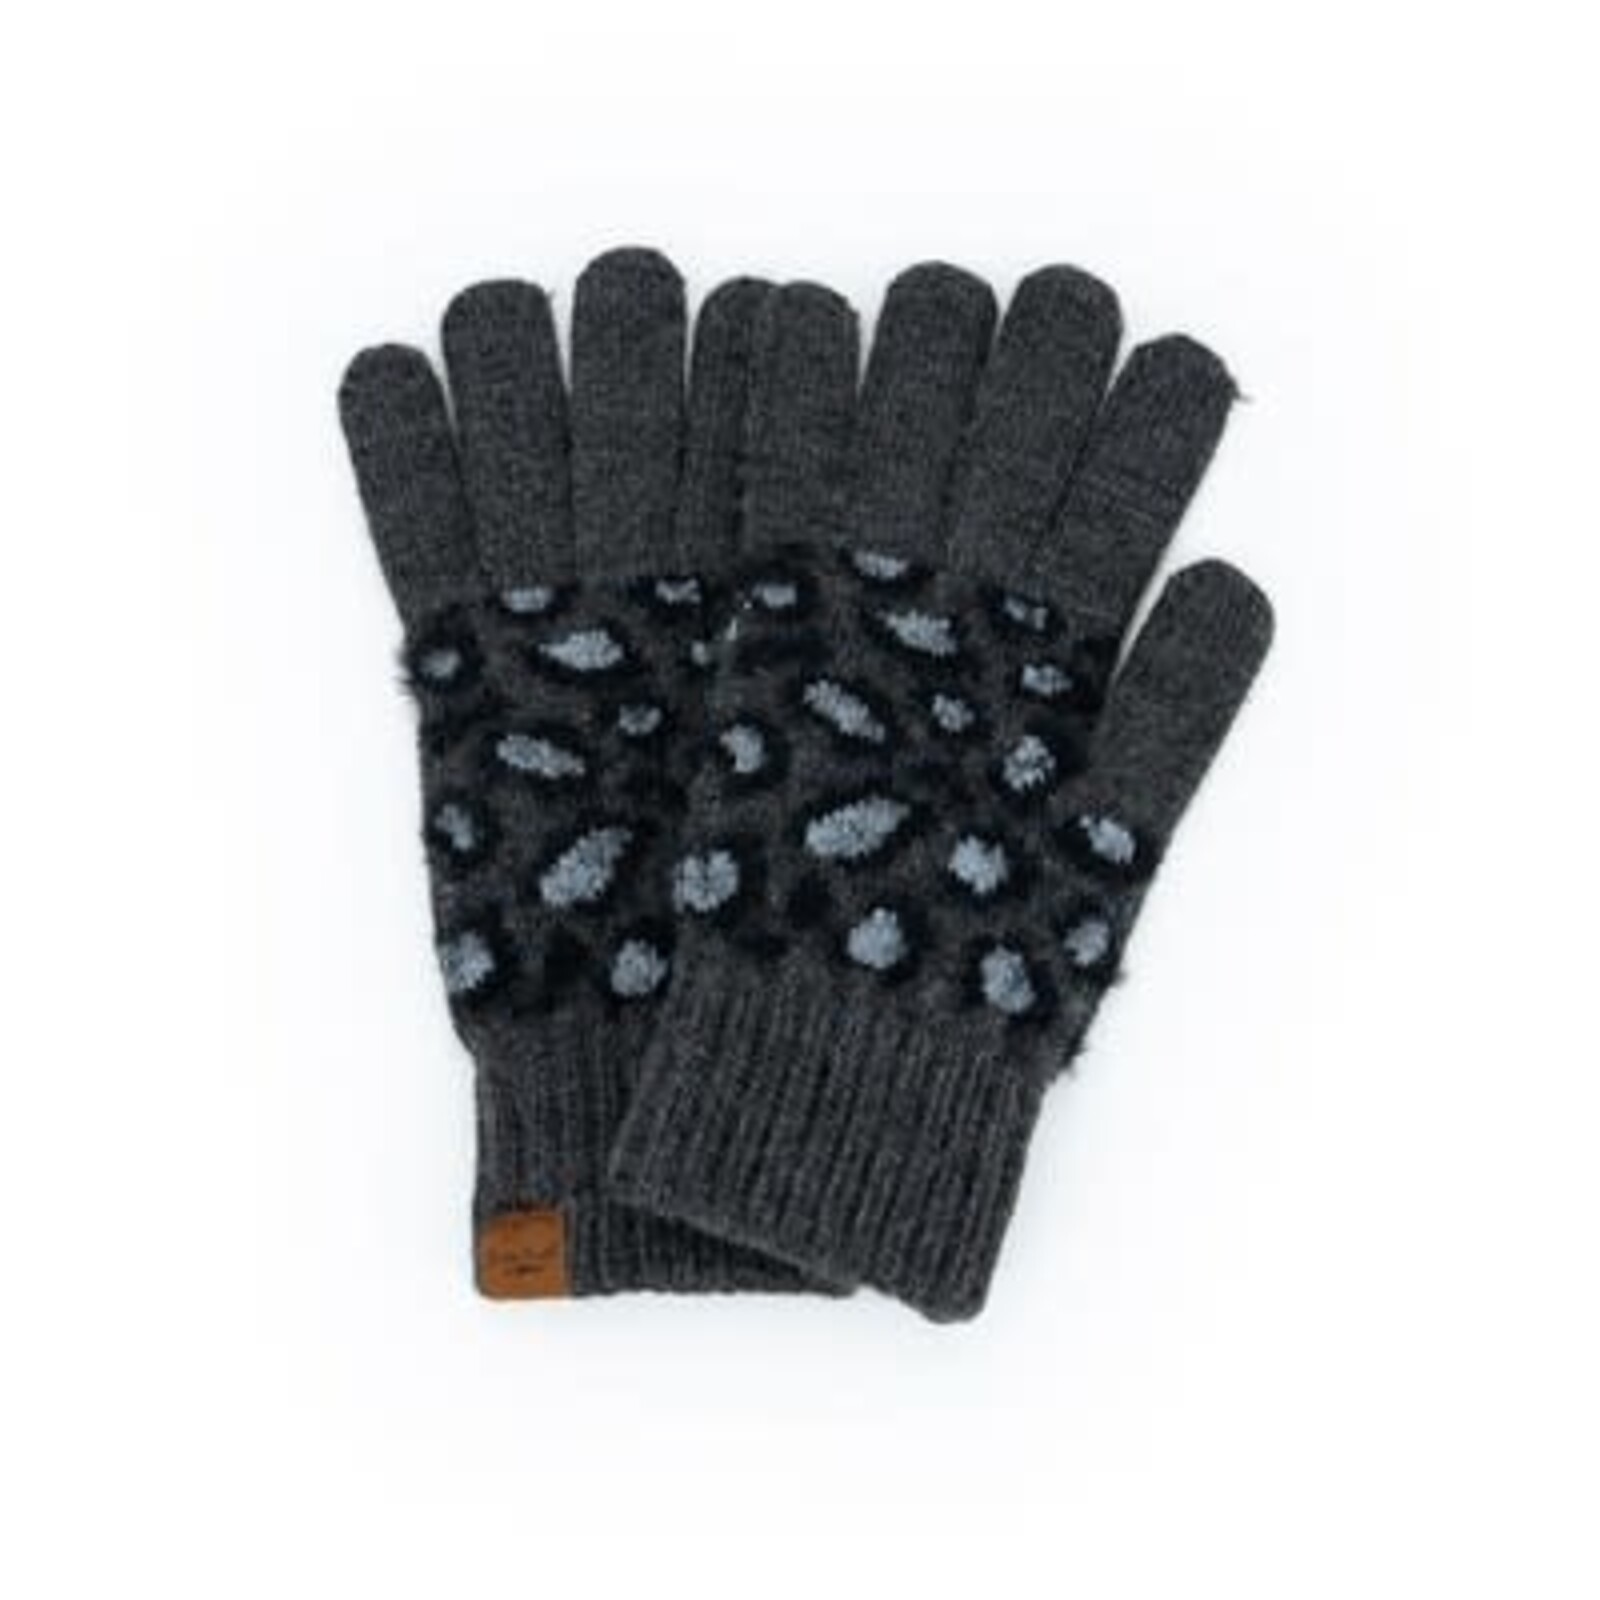 Britt's Knit's Britt's Knits Snow Leopard Gloves  BKSLGLV loading=